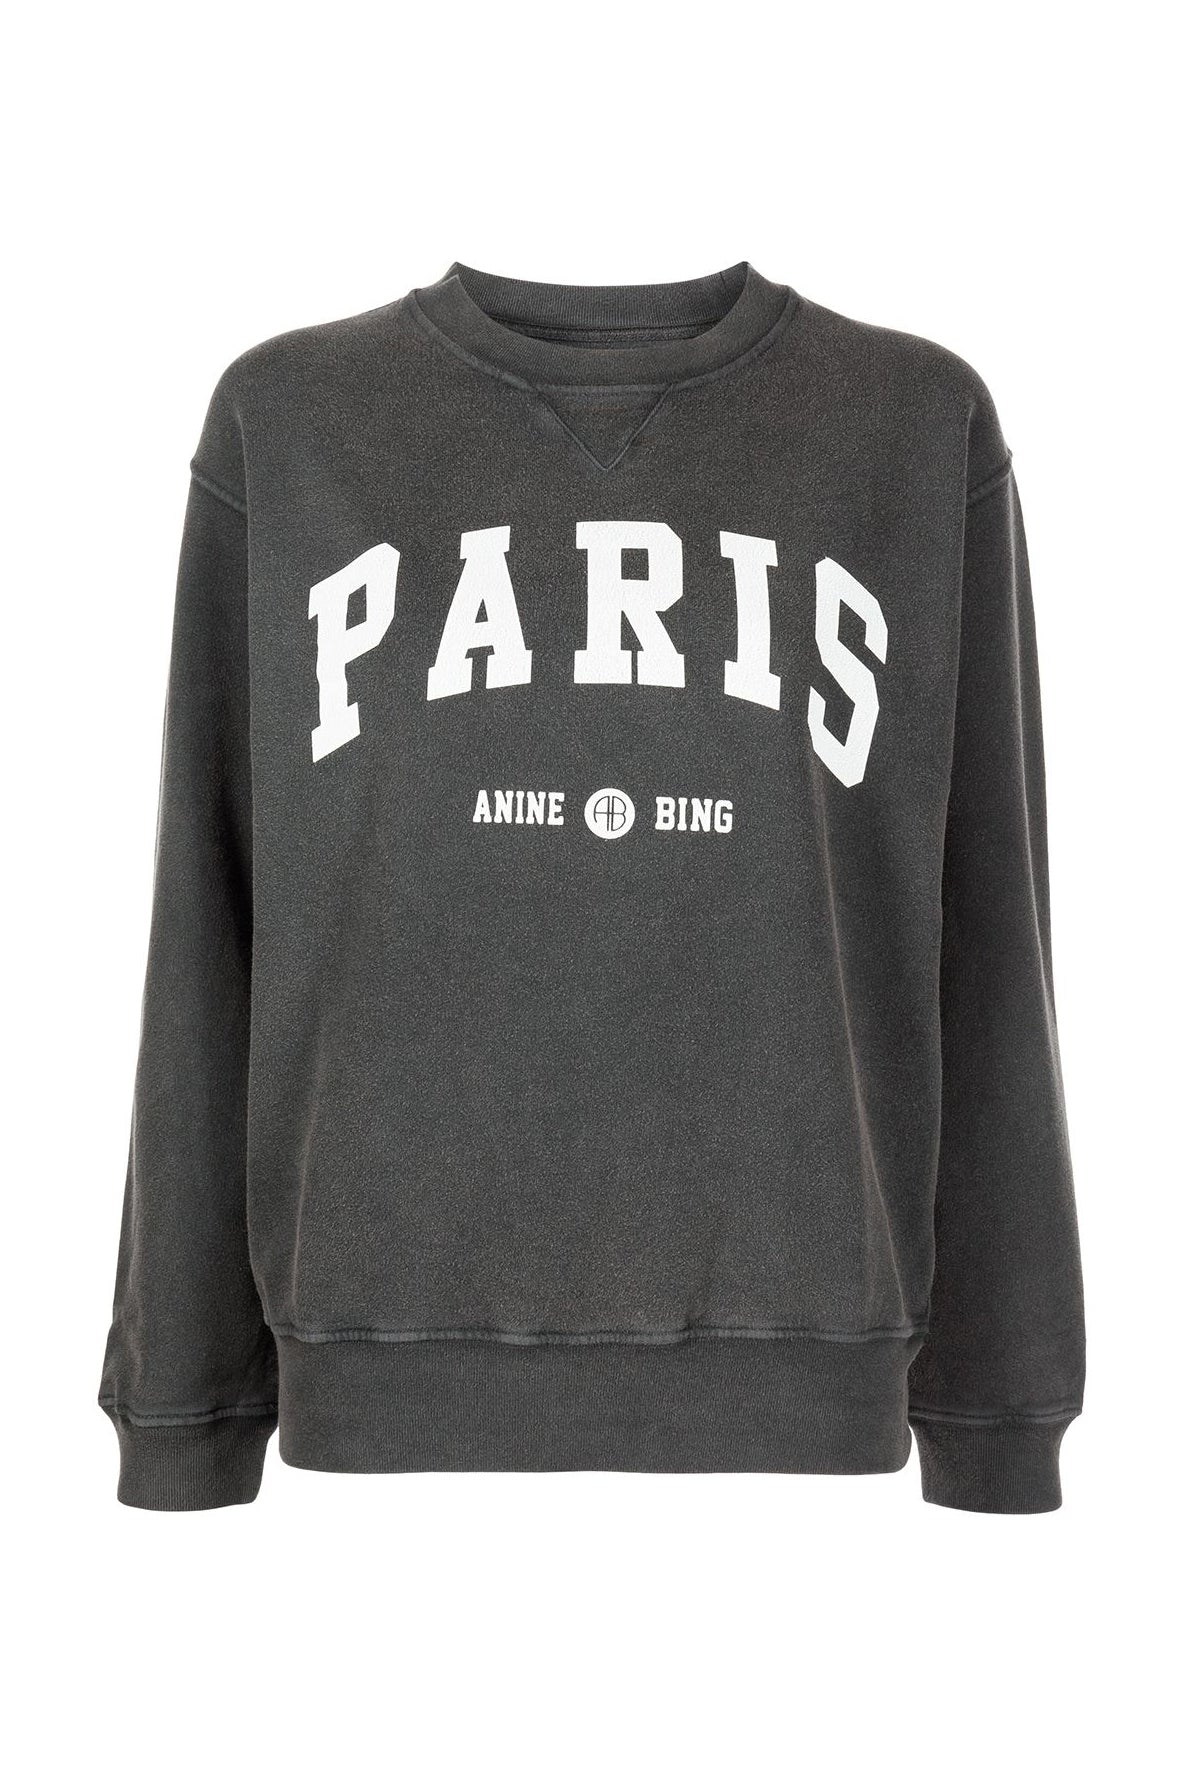 Anine Bing: Ramona printed sweatshirt 'Paris', washed black